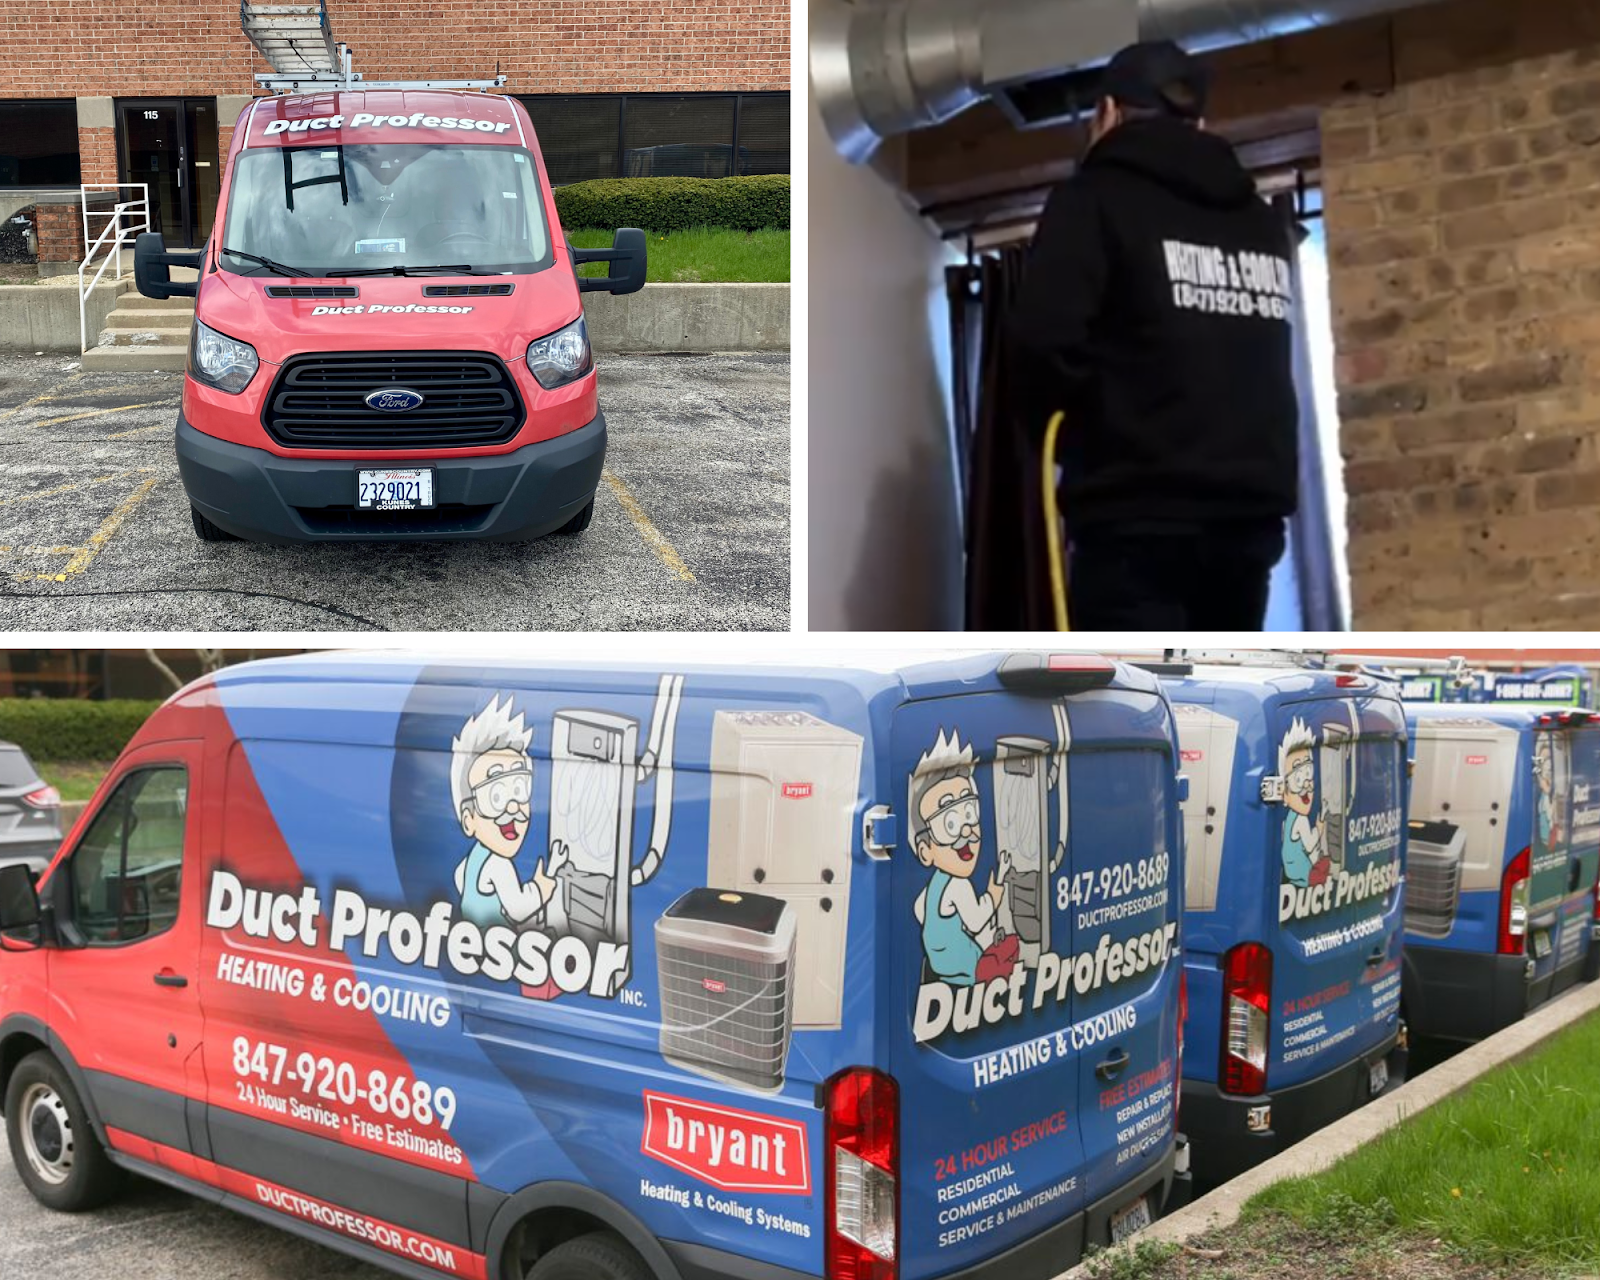 duct professor truck